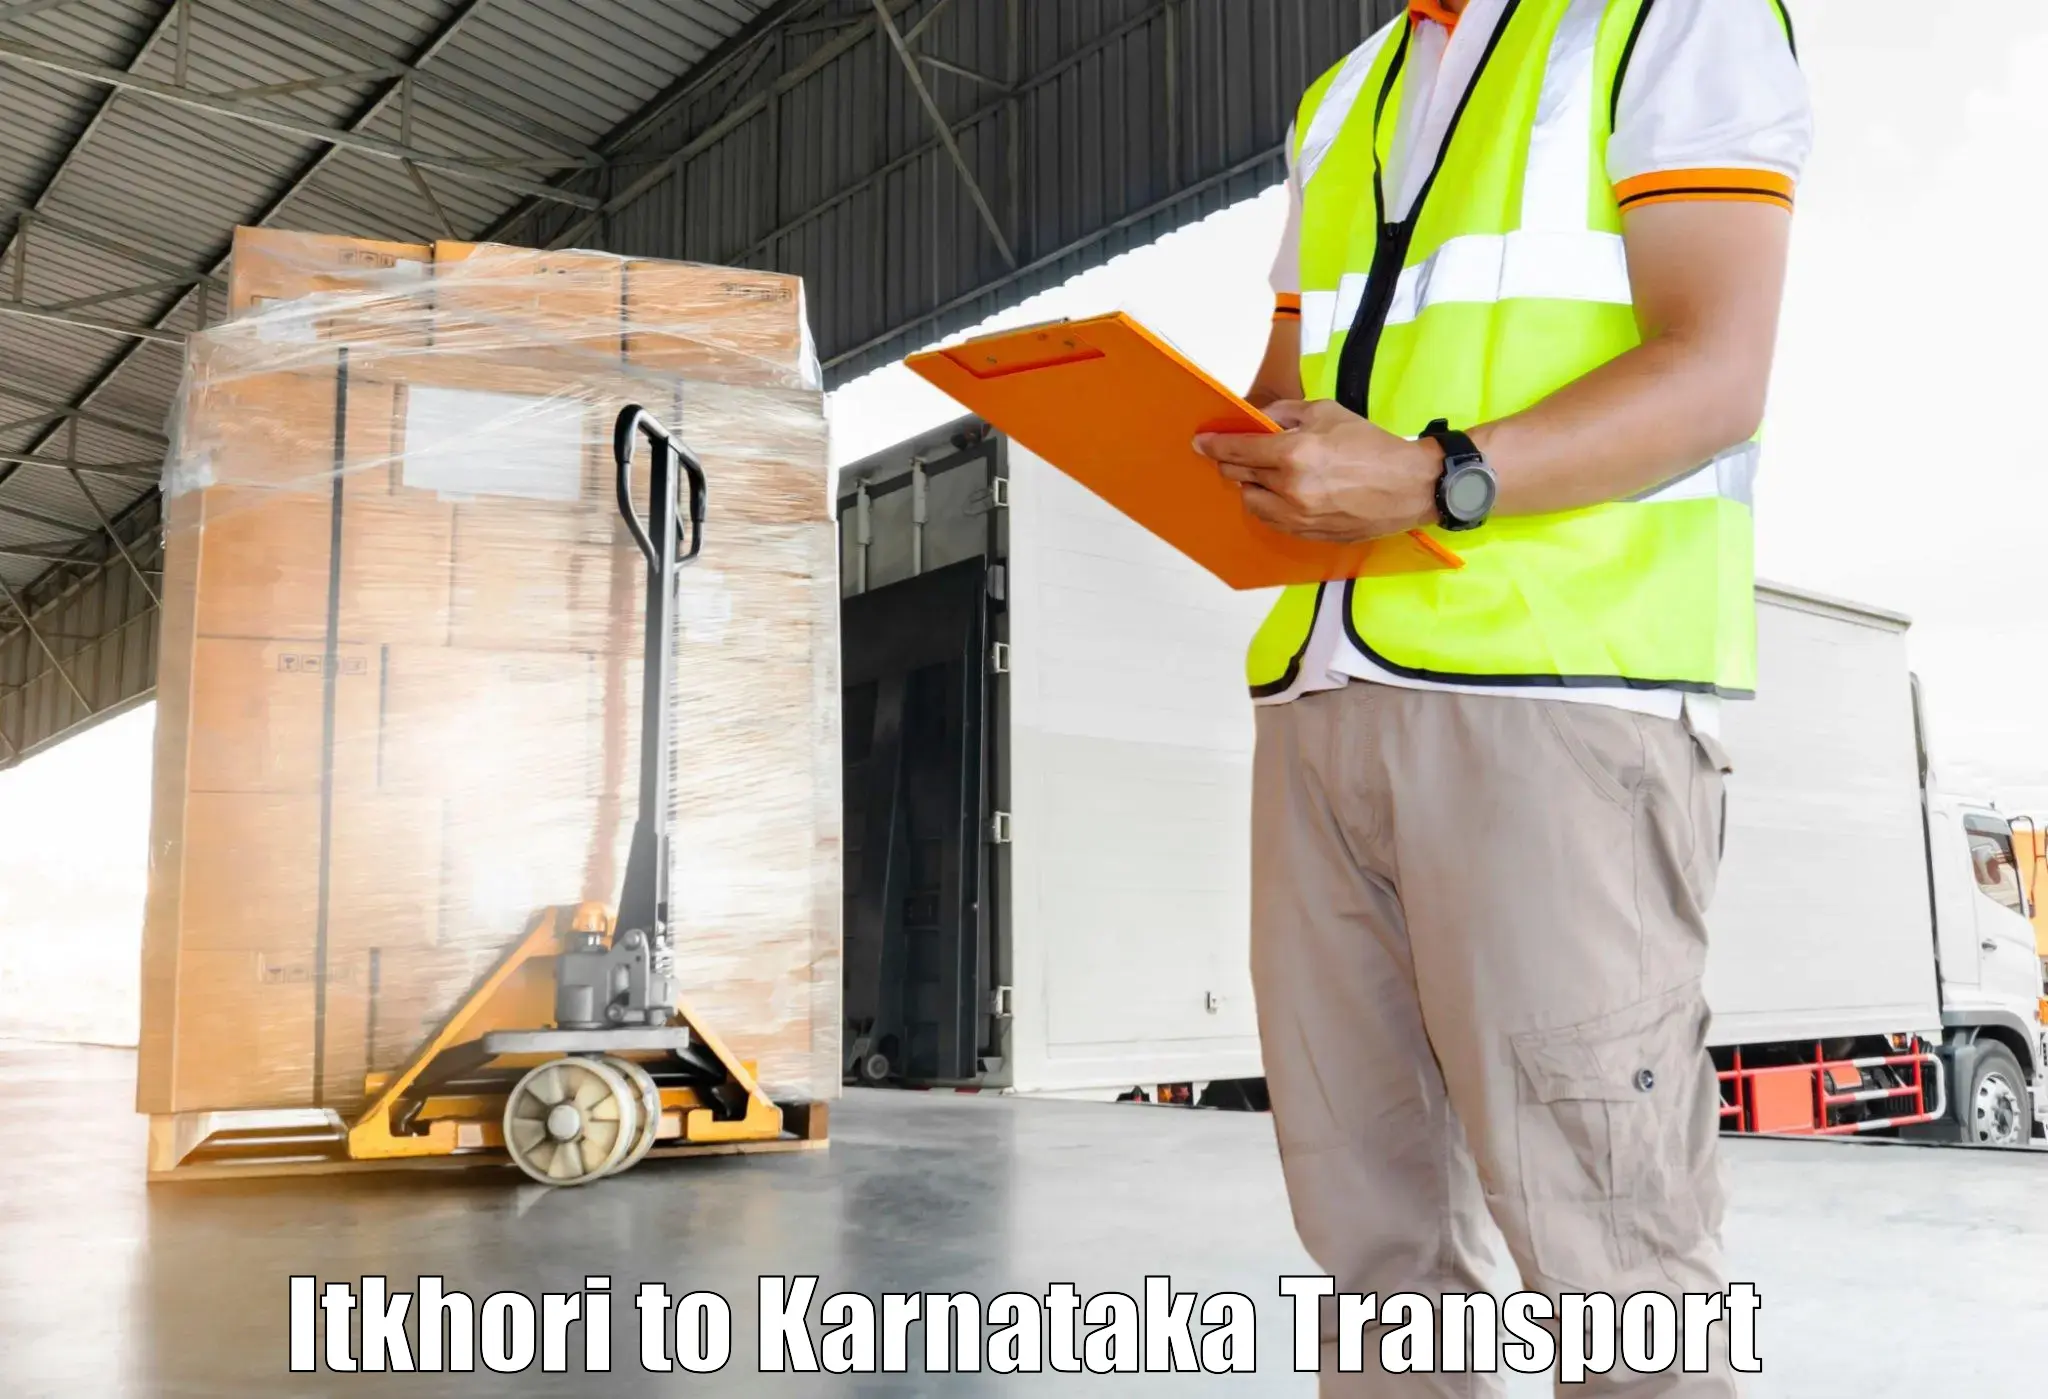 Container transport service Itkhori to Gauribidanur